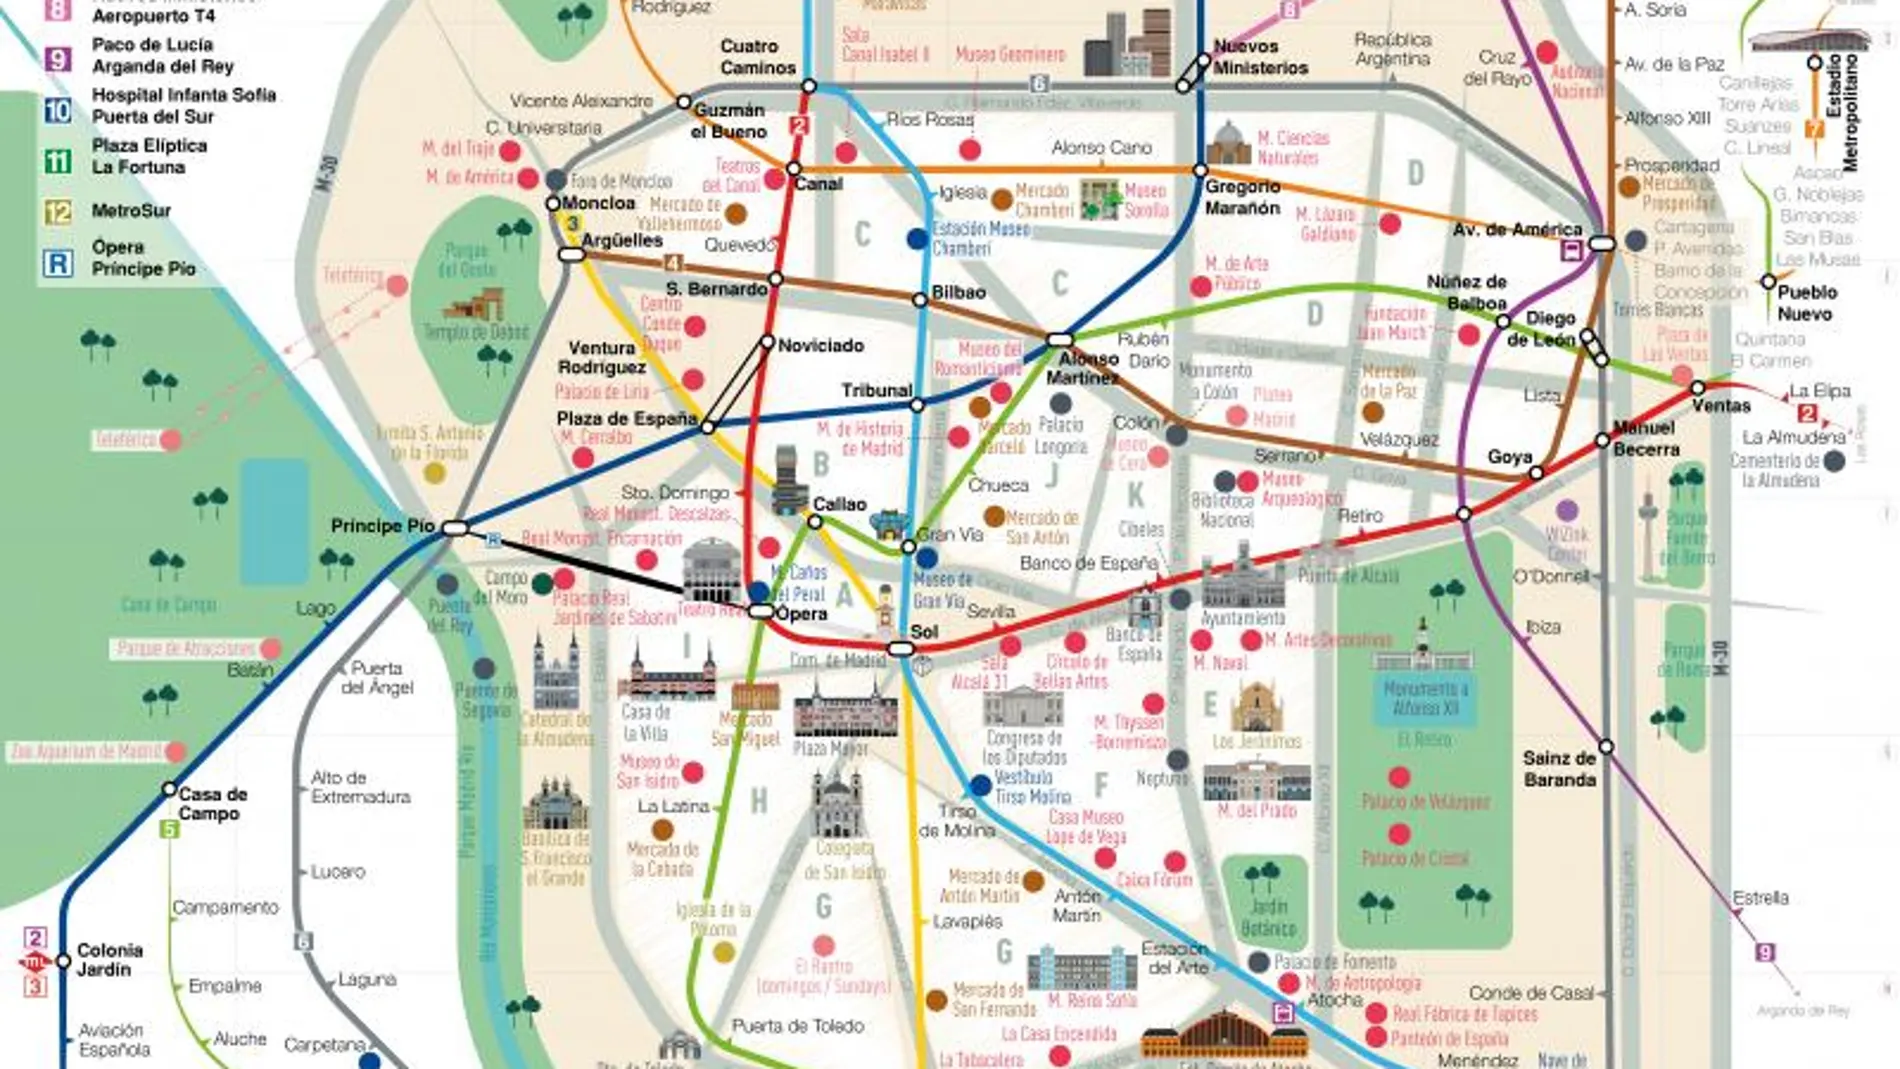 Plano turístico del Metro de Madrid